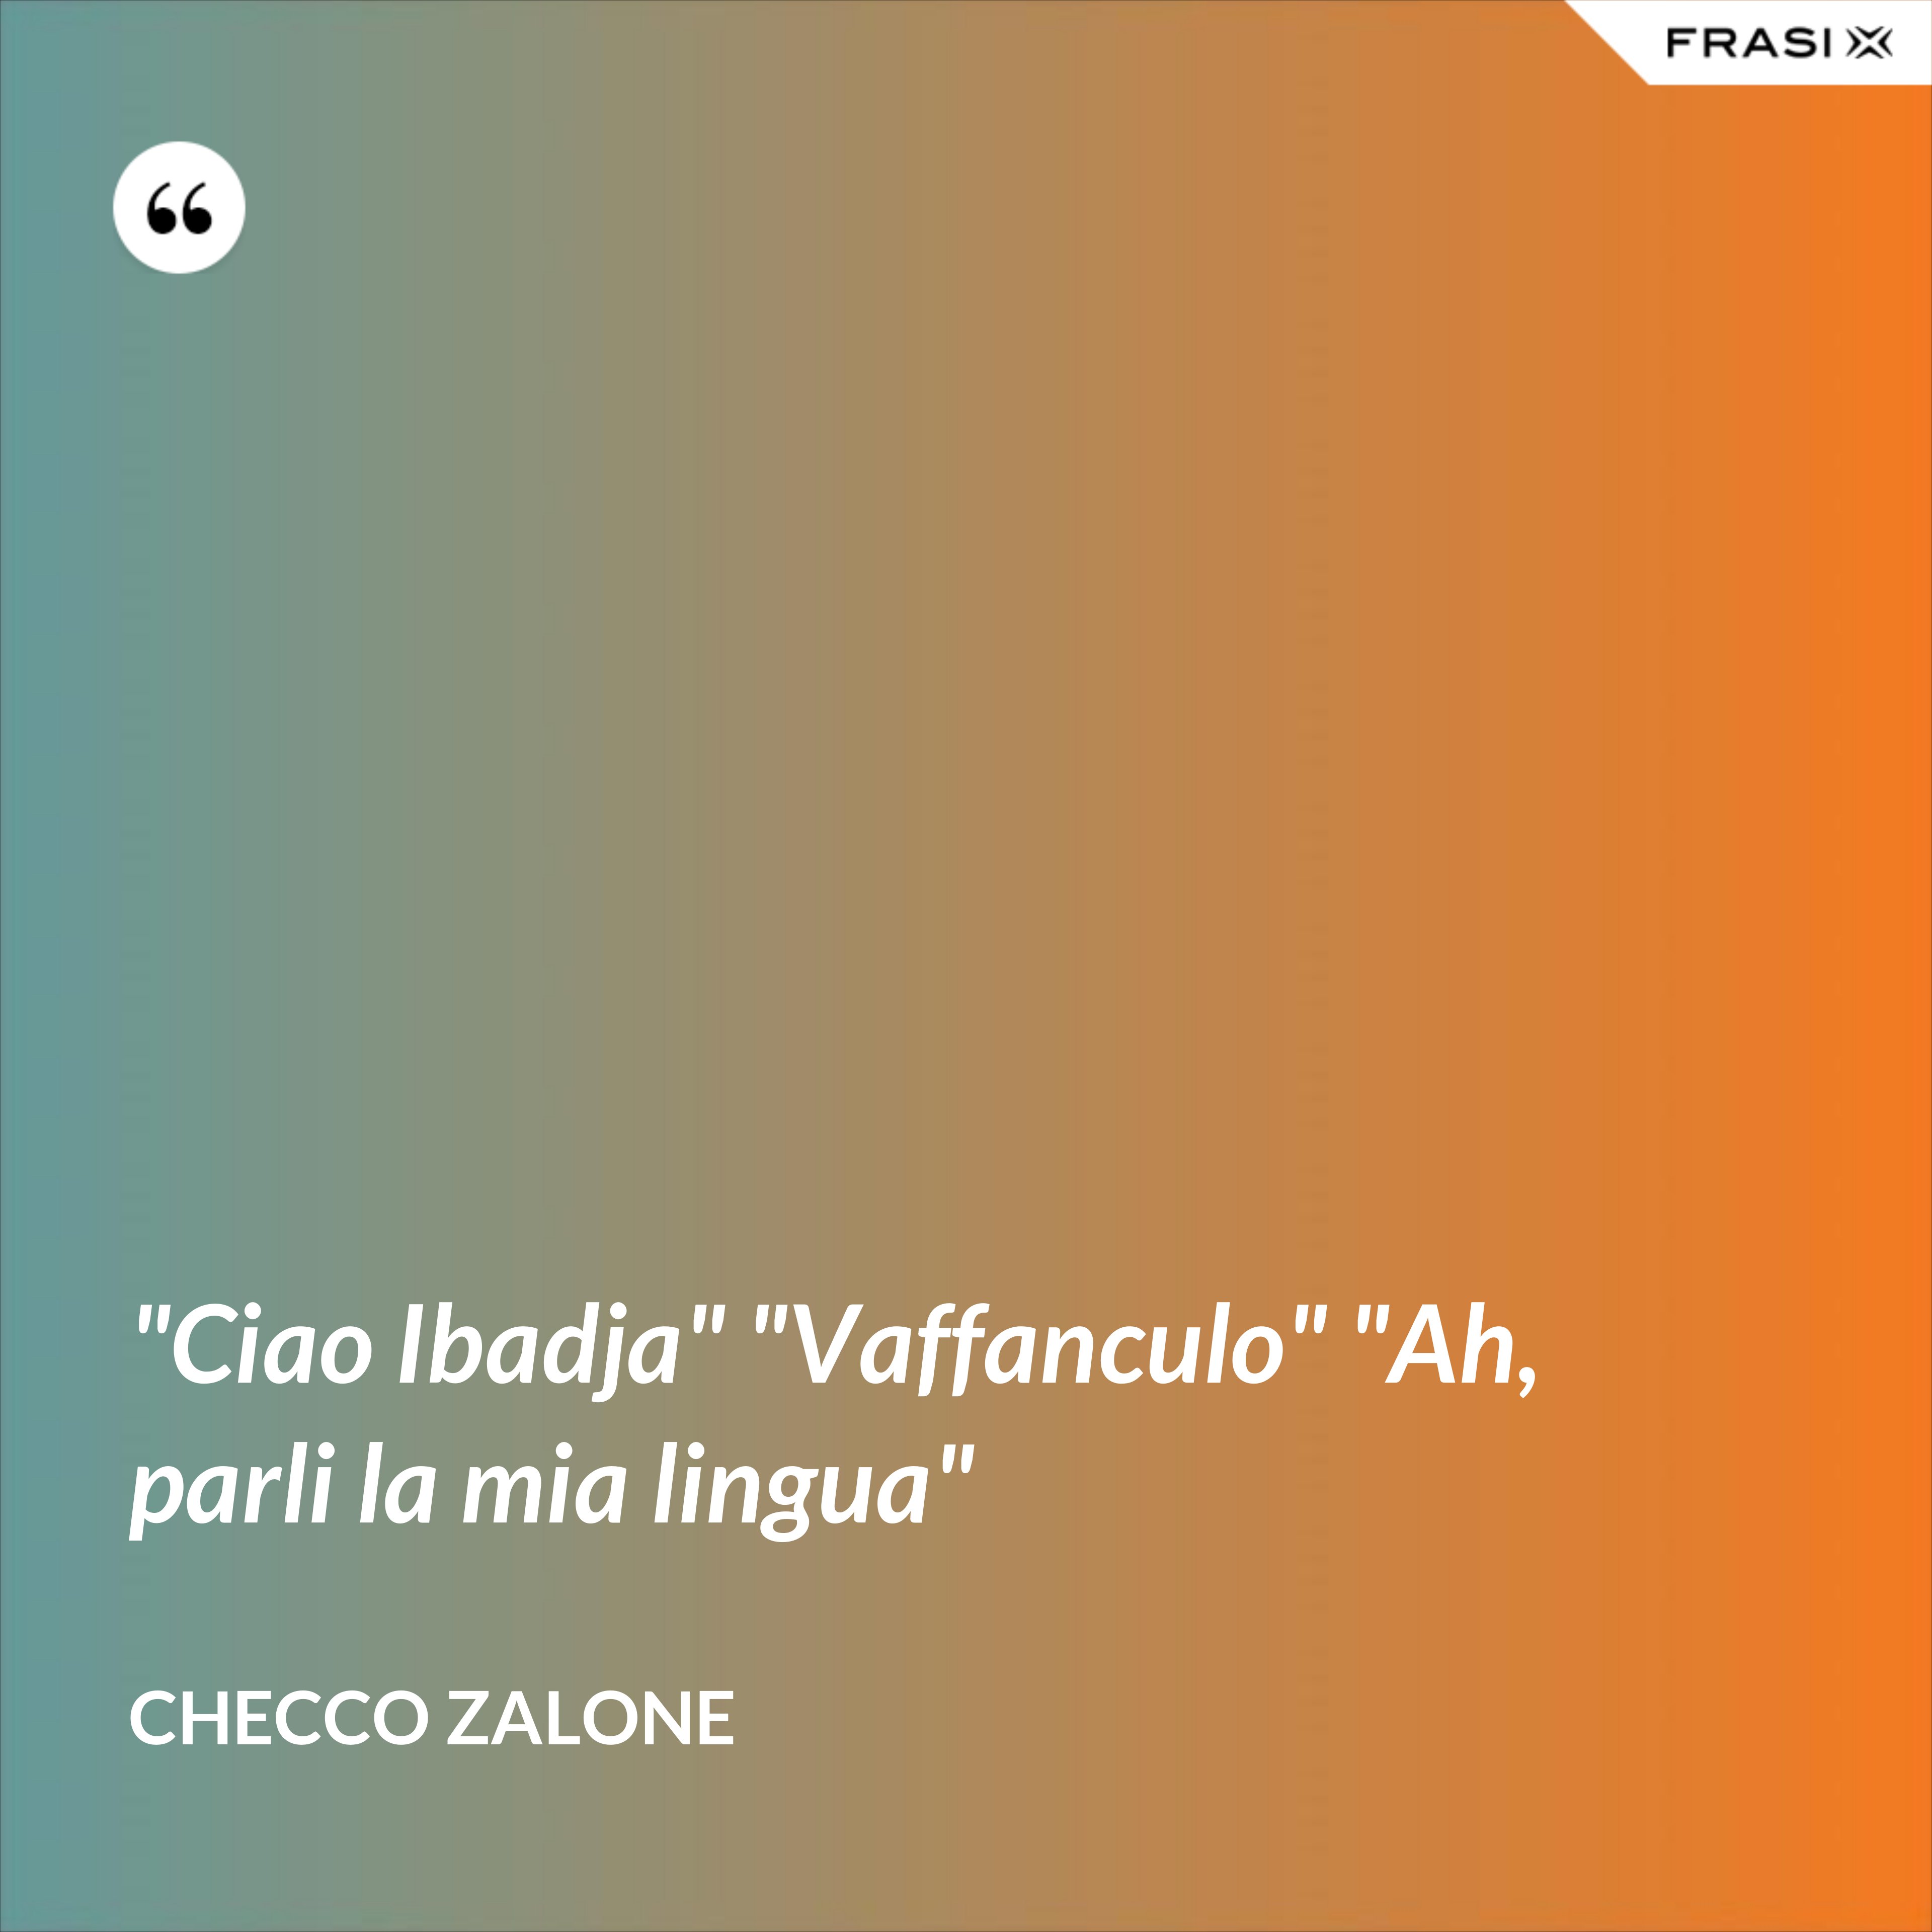 "Ciao Ibadja" "Vaffanculo" "Ah, parli la mia lingua" - Checco Zalone